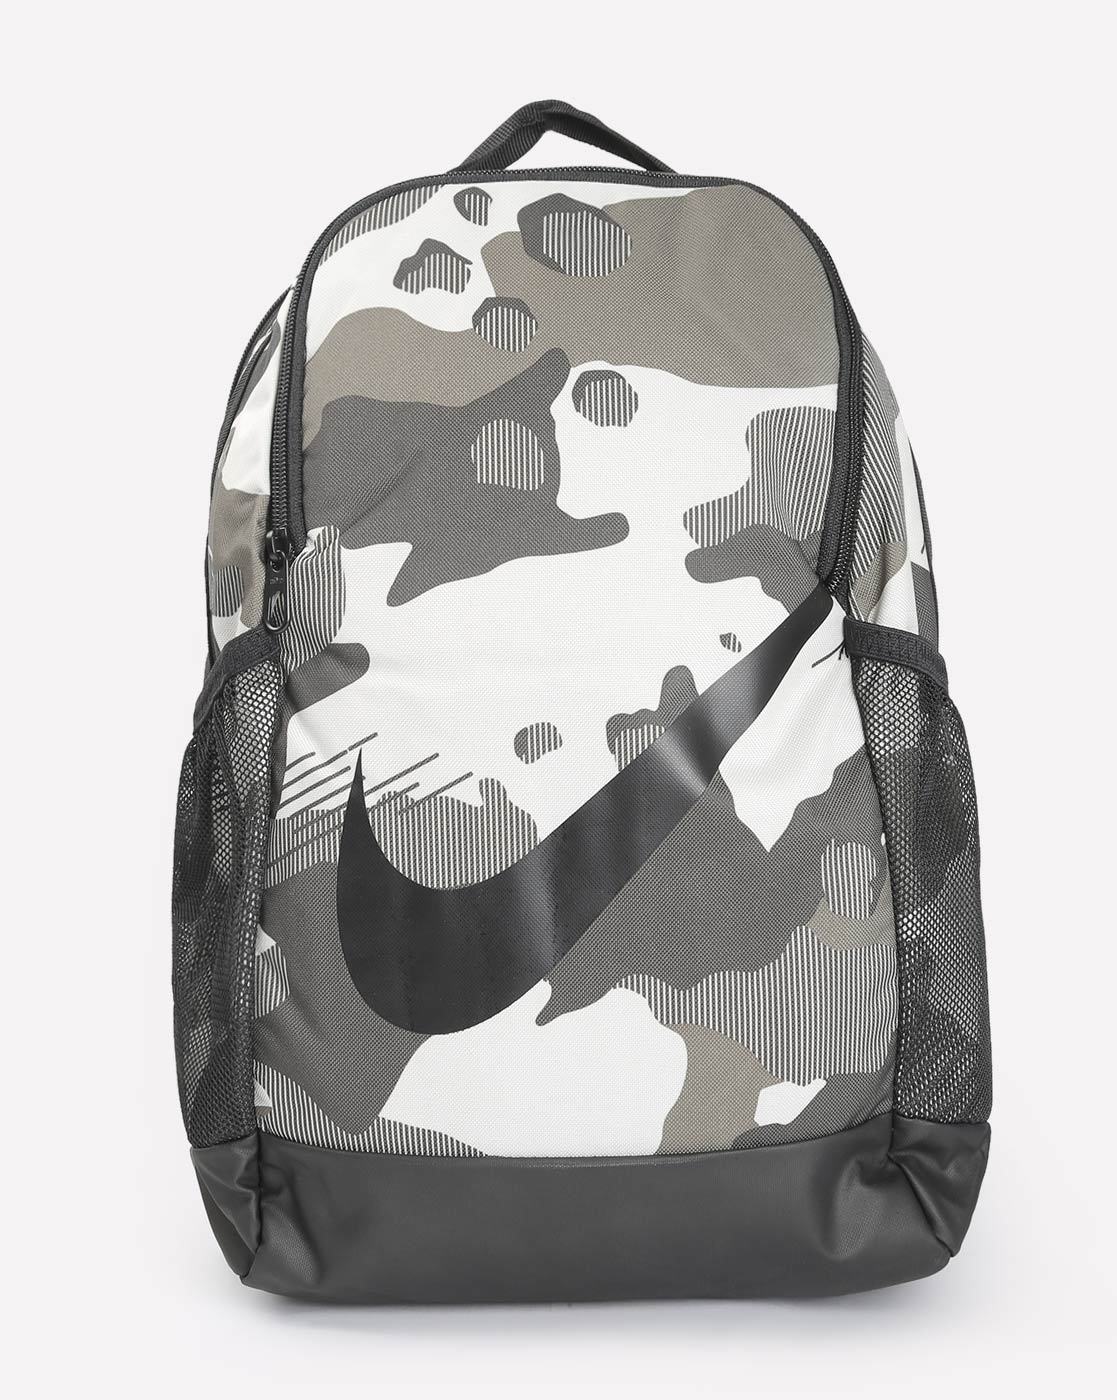 nike army print backpack